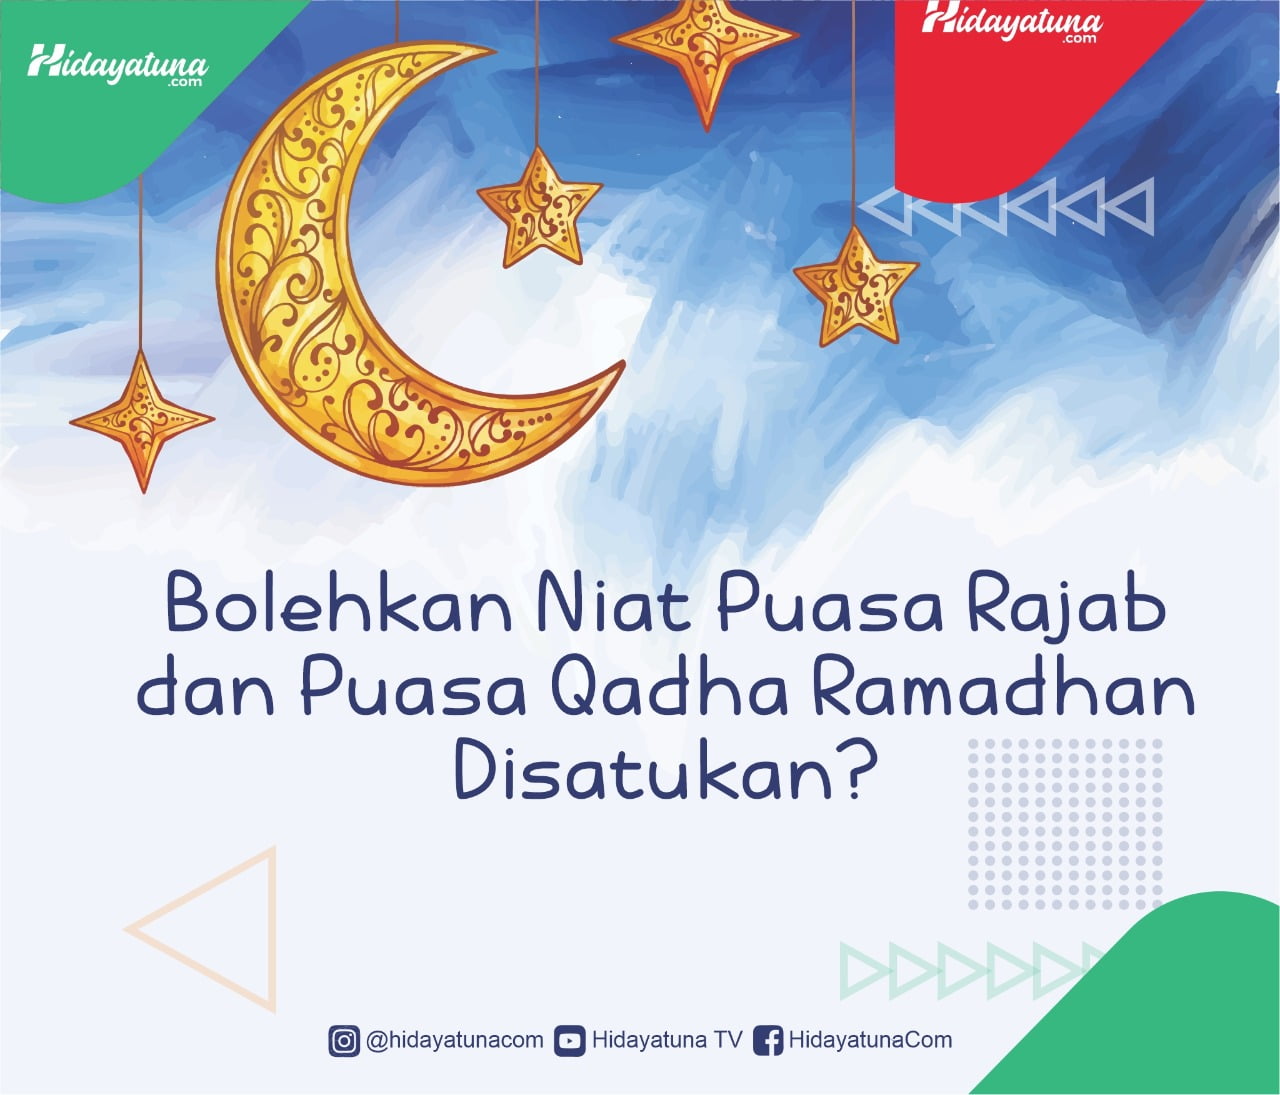  Bolehkah Niat Puasa Rajab dan Qadha Ramadhan Disatukan?